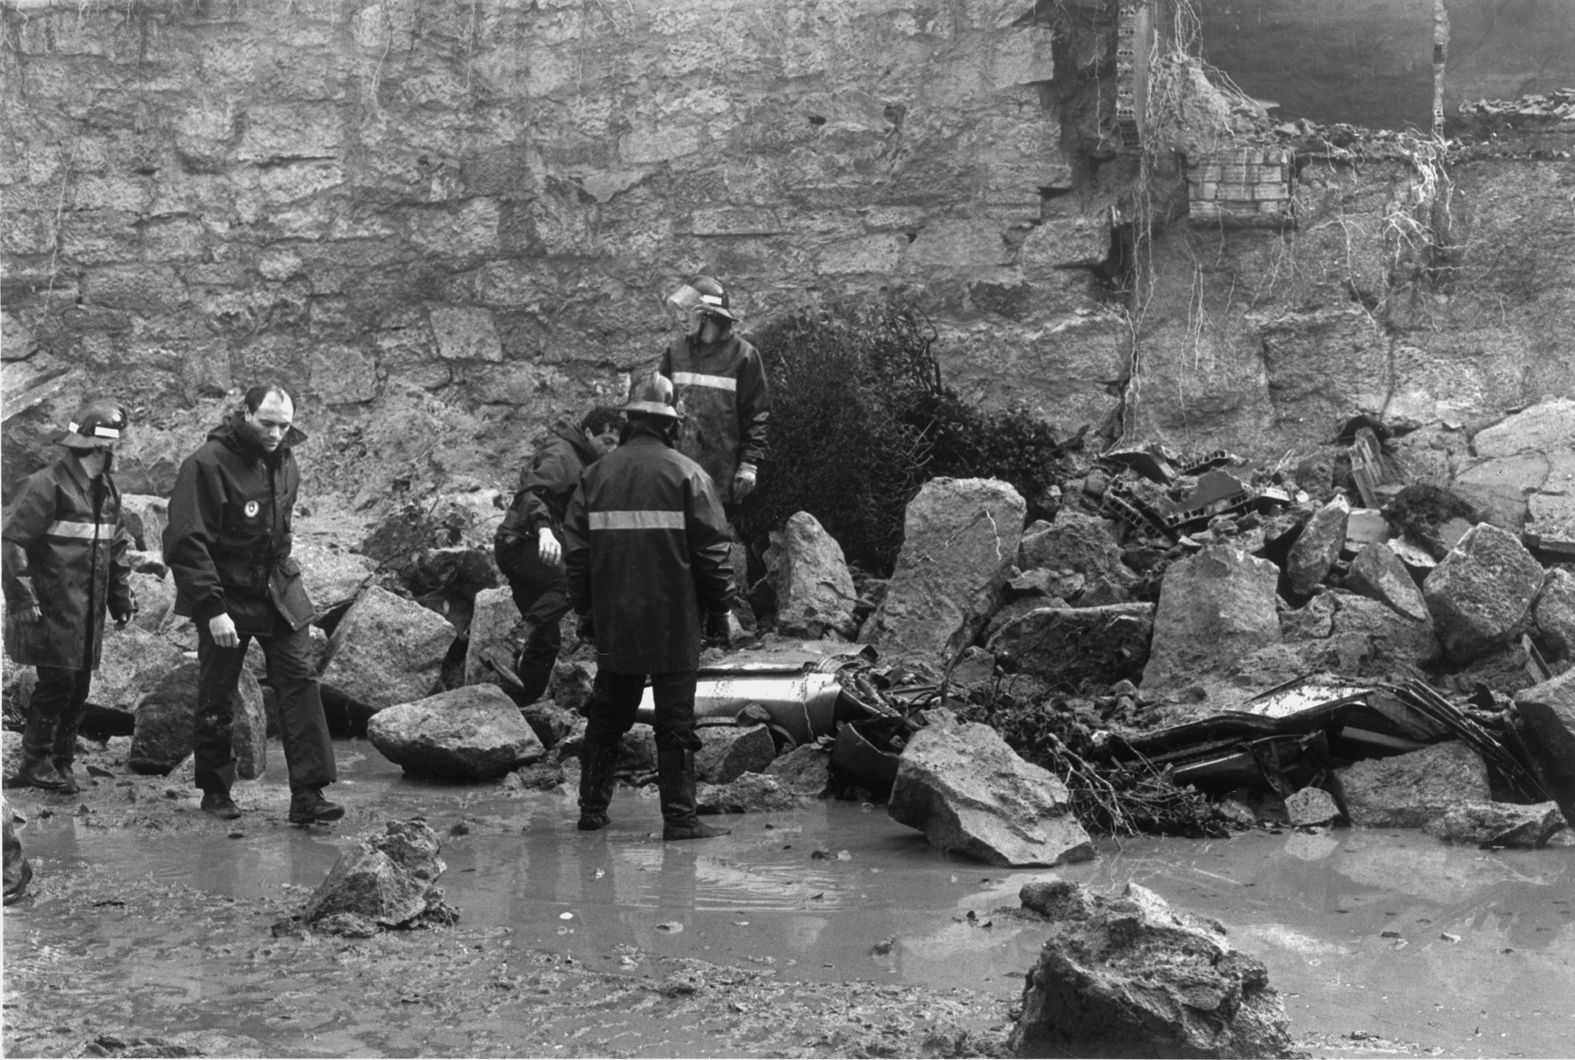 1989 16 diciembre Se derrumba el muro del colegio Labor en la calle Camelias tras un temporal. Cinco coches quedarán sepultados sin que haya víctimas personales. El muro tenía una altura de casi cinco metro